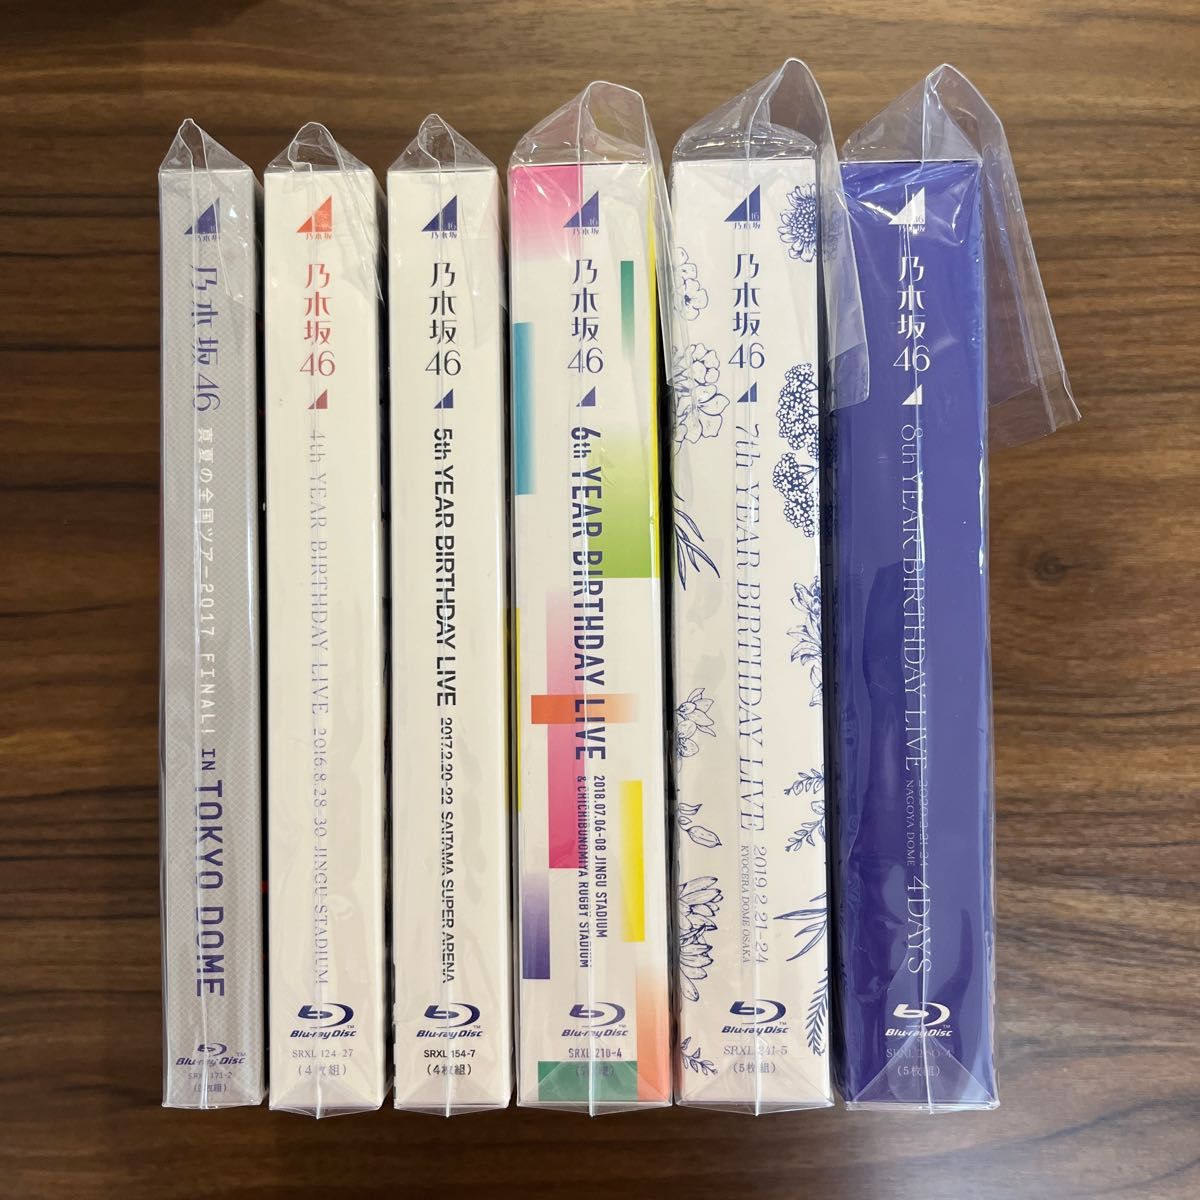 乃木坂46 Blu-ray 6本セット 邦楽 邦楽 bluegirafferestaurant.com